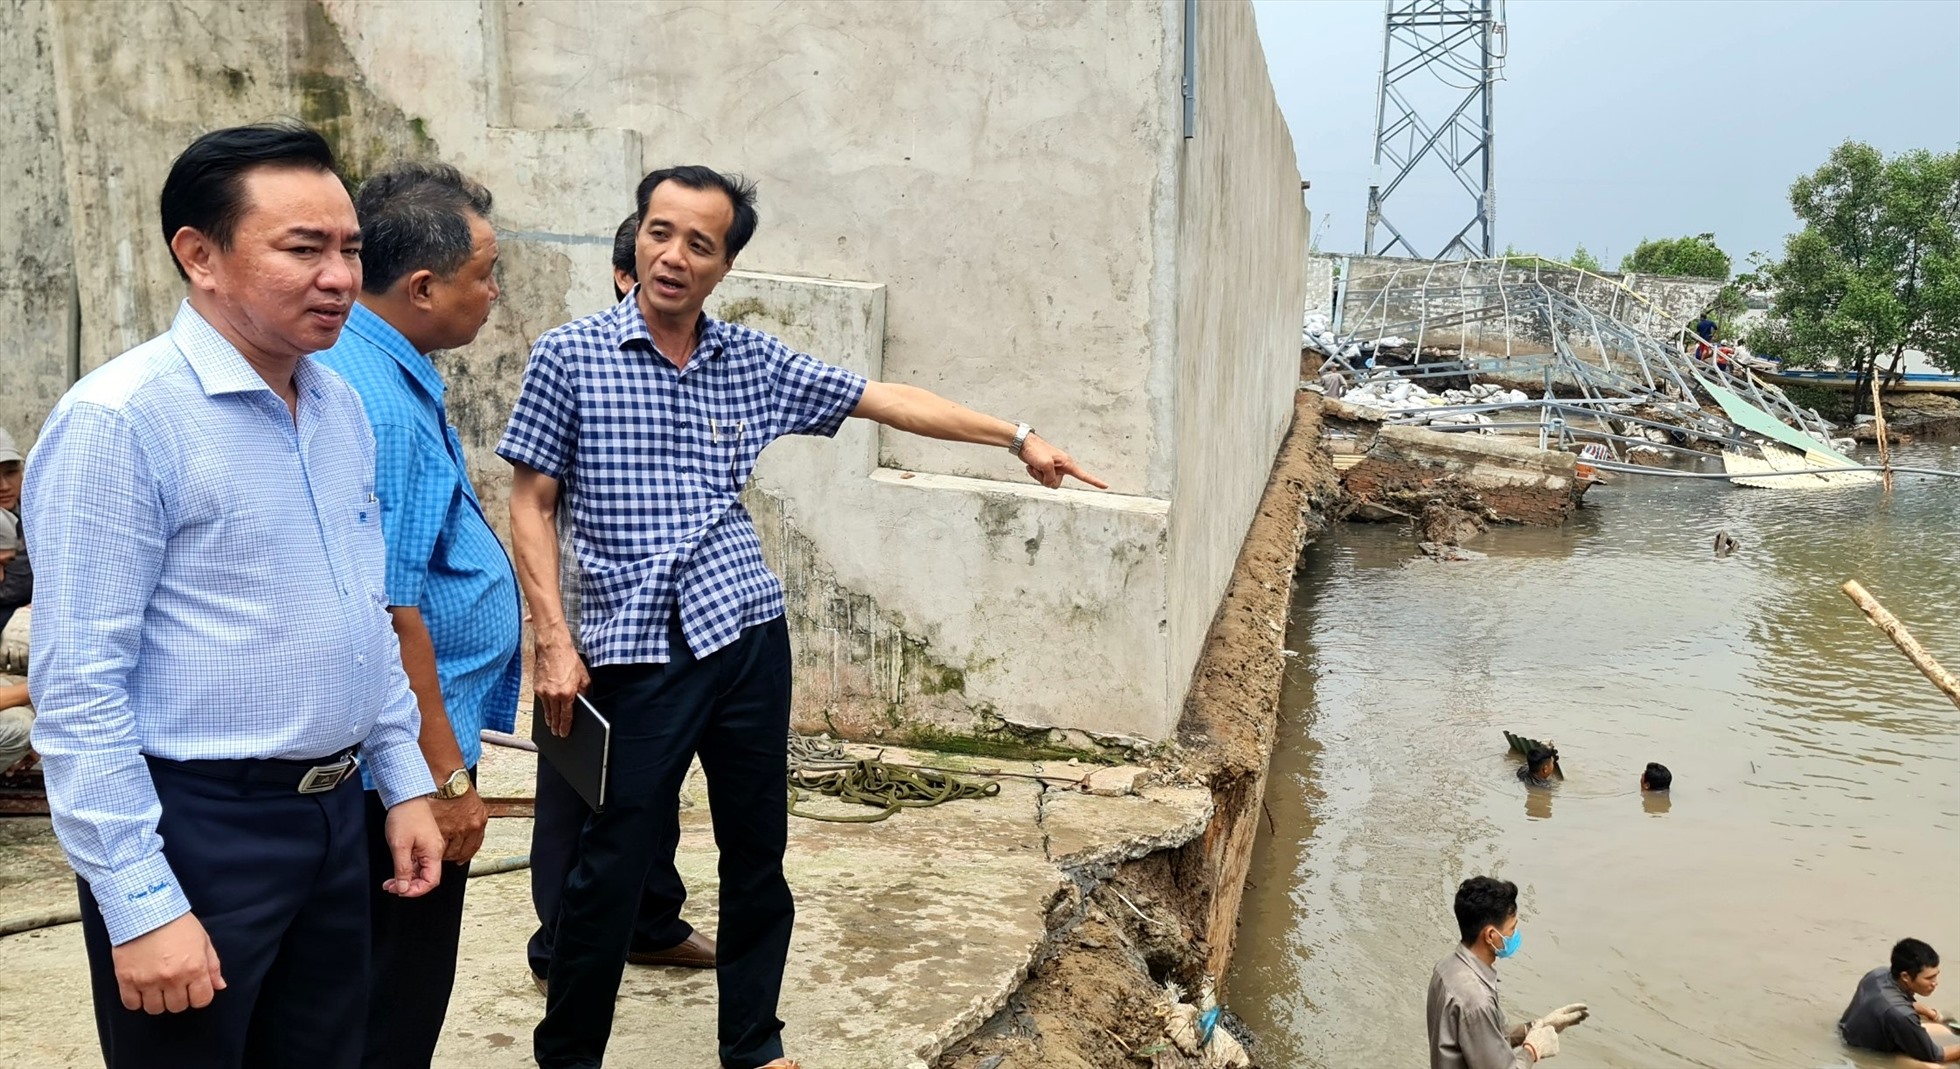 Cách trụ điện đã lở sâu vào đất liền đe dọa trụ điện, sau khi kiểm tra Phó Chủ tịch UBND tỉnh Bạc Liêu Phan Thanh Duy chỉ đạo khẩn trương di dời trụ điện đến địa điểm an toàn. Ảnh: Nhật Hồ